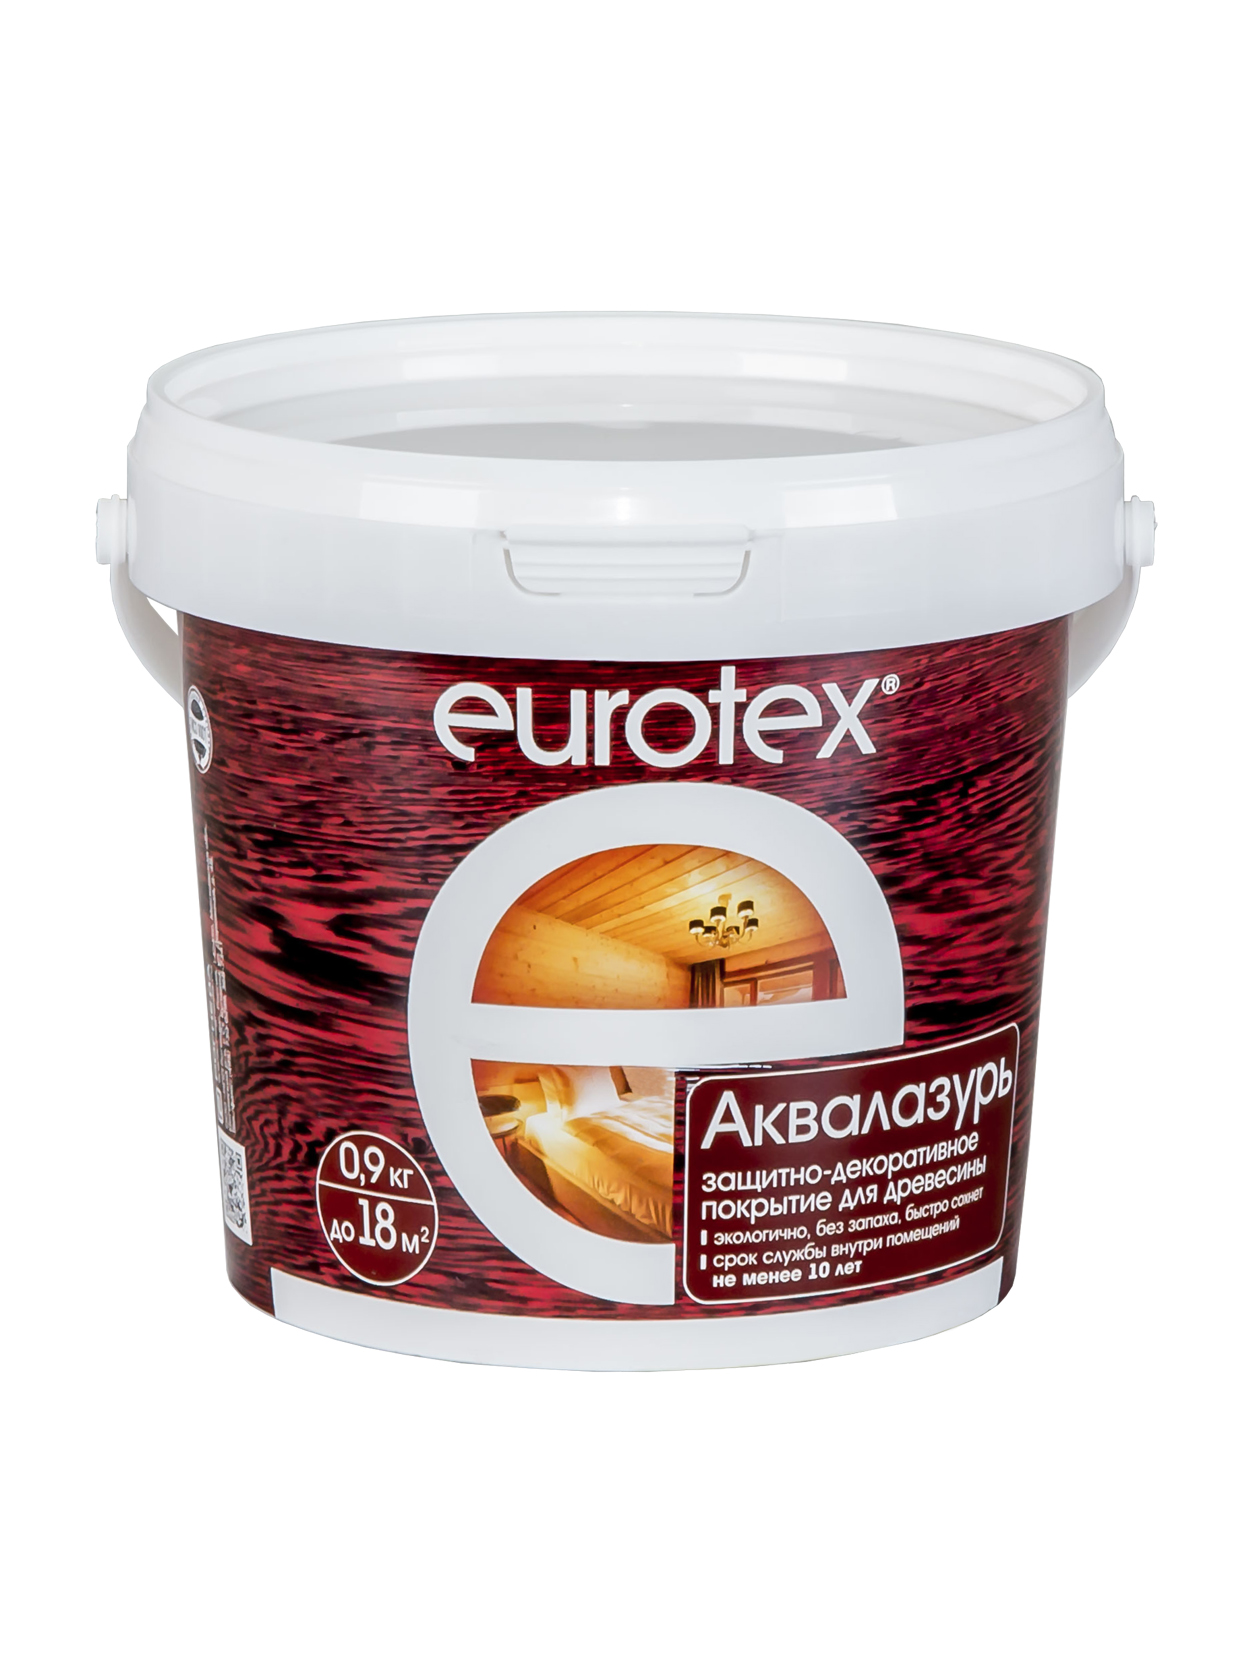 Покрытие Eurotex Аквалазурь, полуглянцевое, 0,9 кг, палисандр защитно декоративное покрытие для древесины eurotex аквалазурь палисандр 0 9 кг 15629